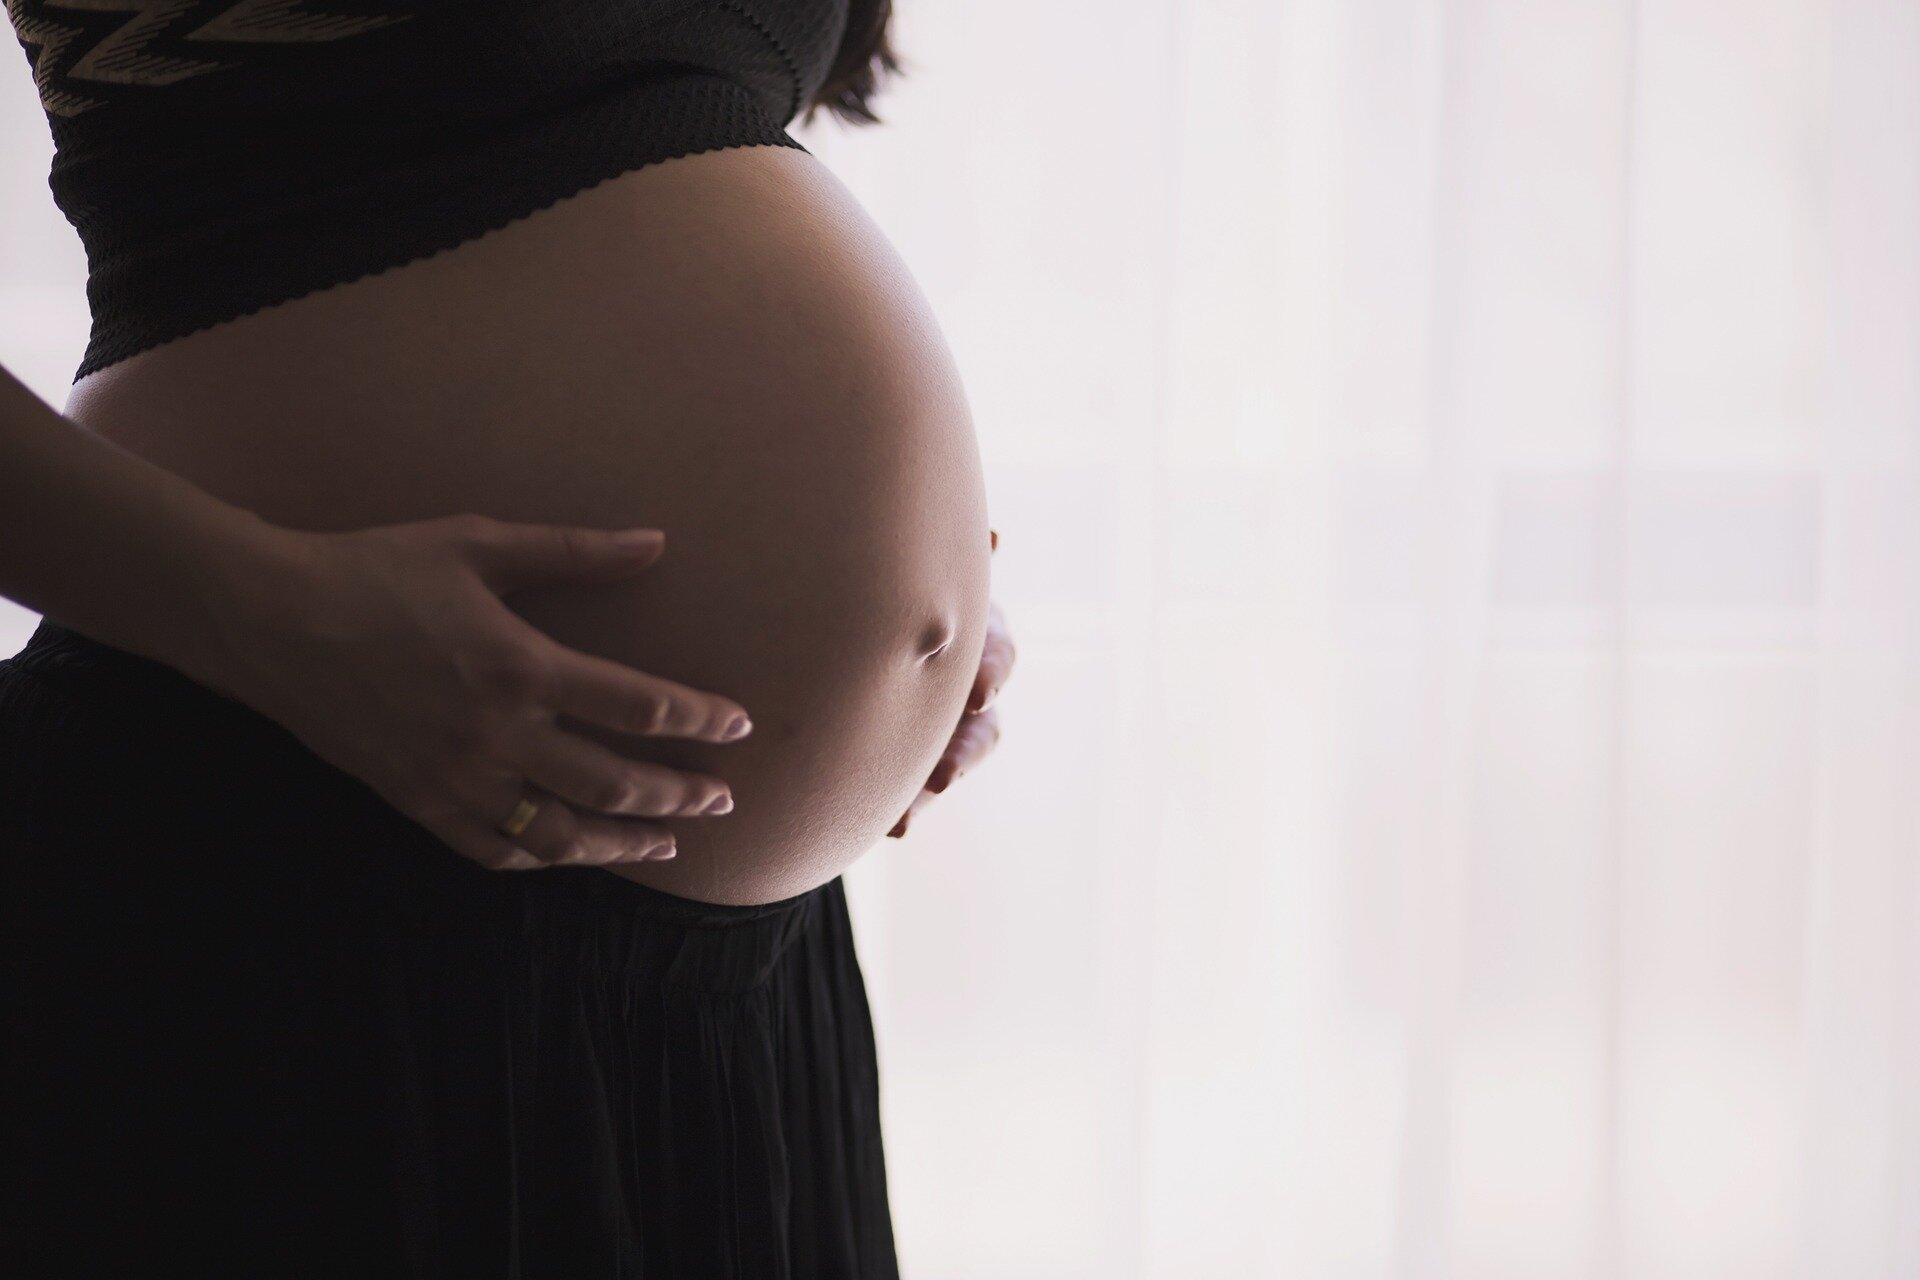 Studiu: Femeile însărcinate au dezvoltat stări de anxietate și depresie accentuate în pandemie